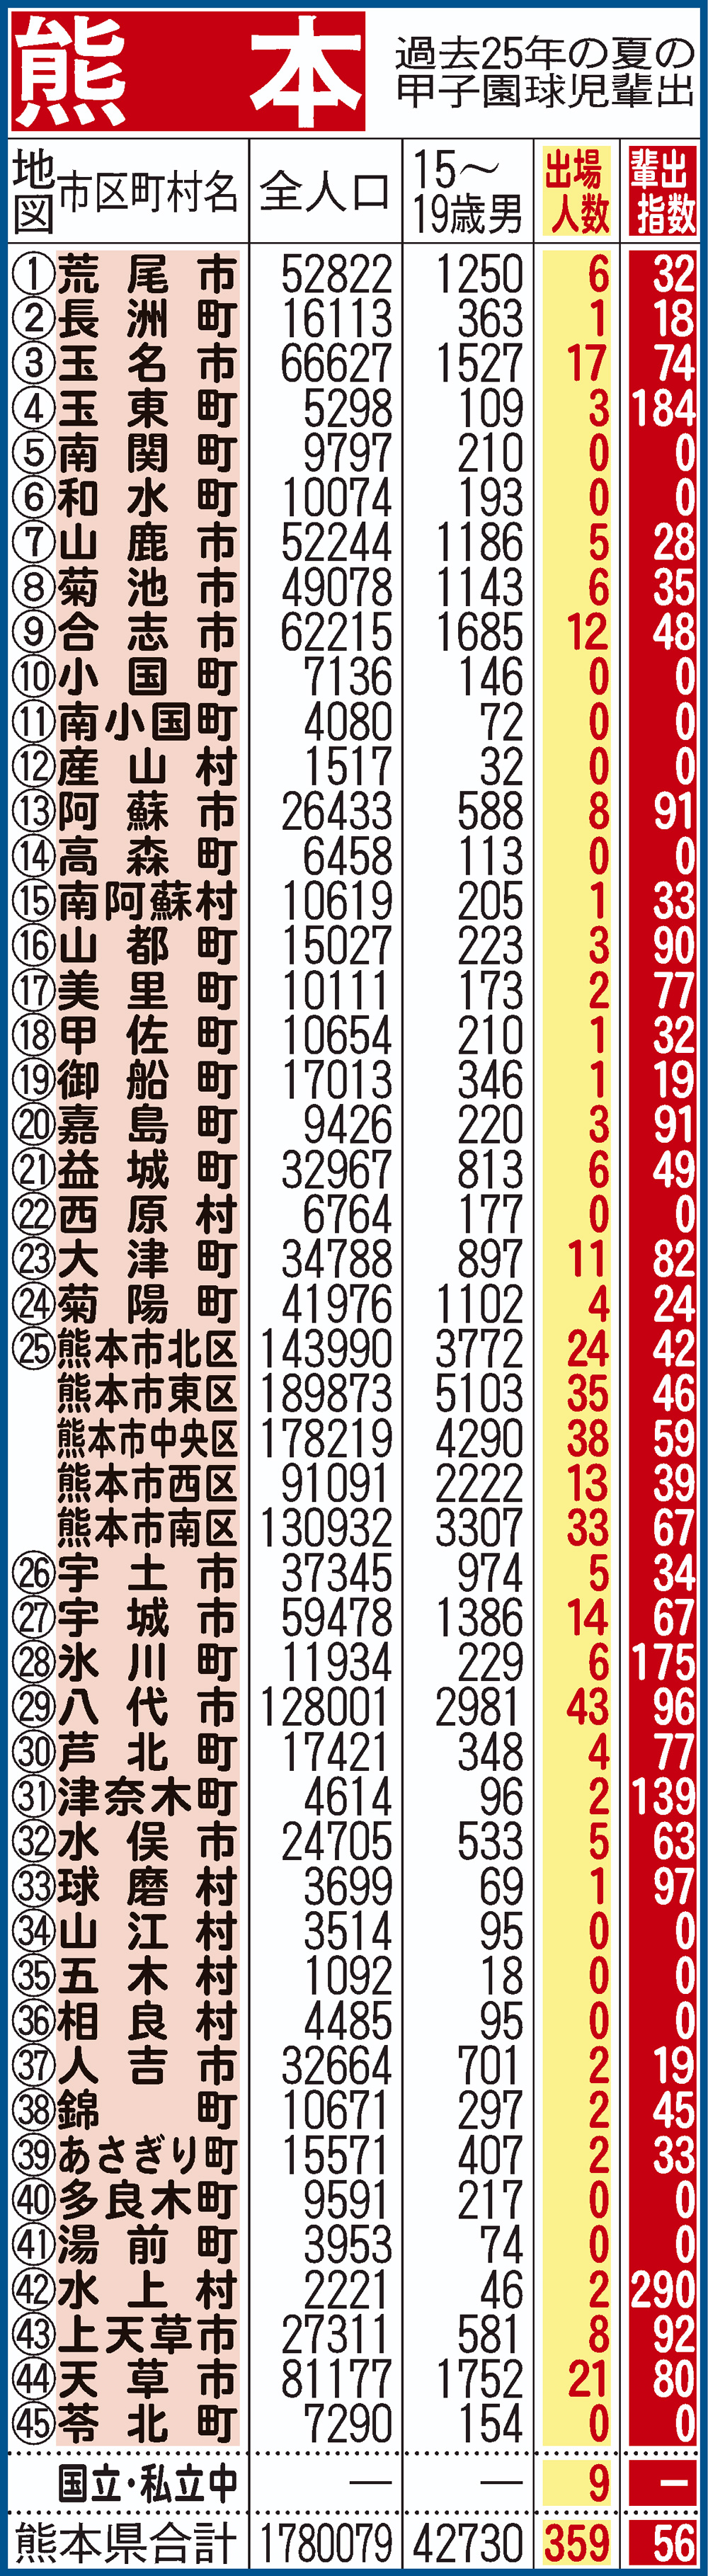 過去25年間における熊本県地域別の甲子園輩出指数